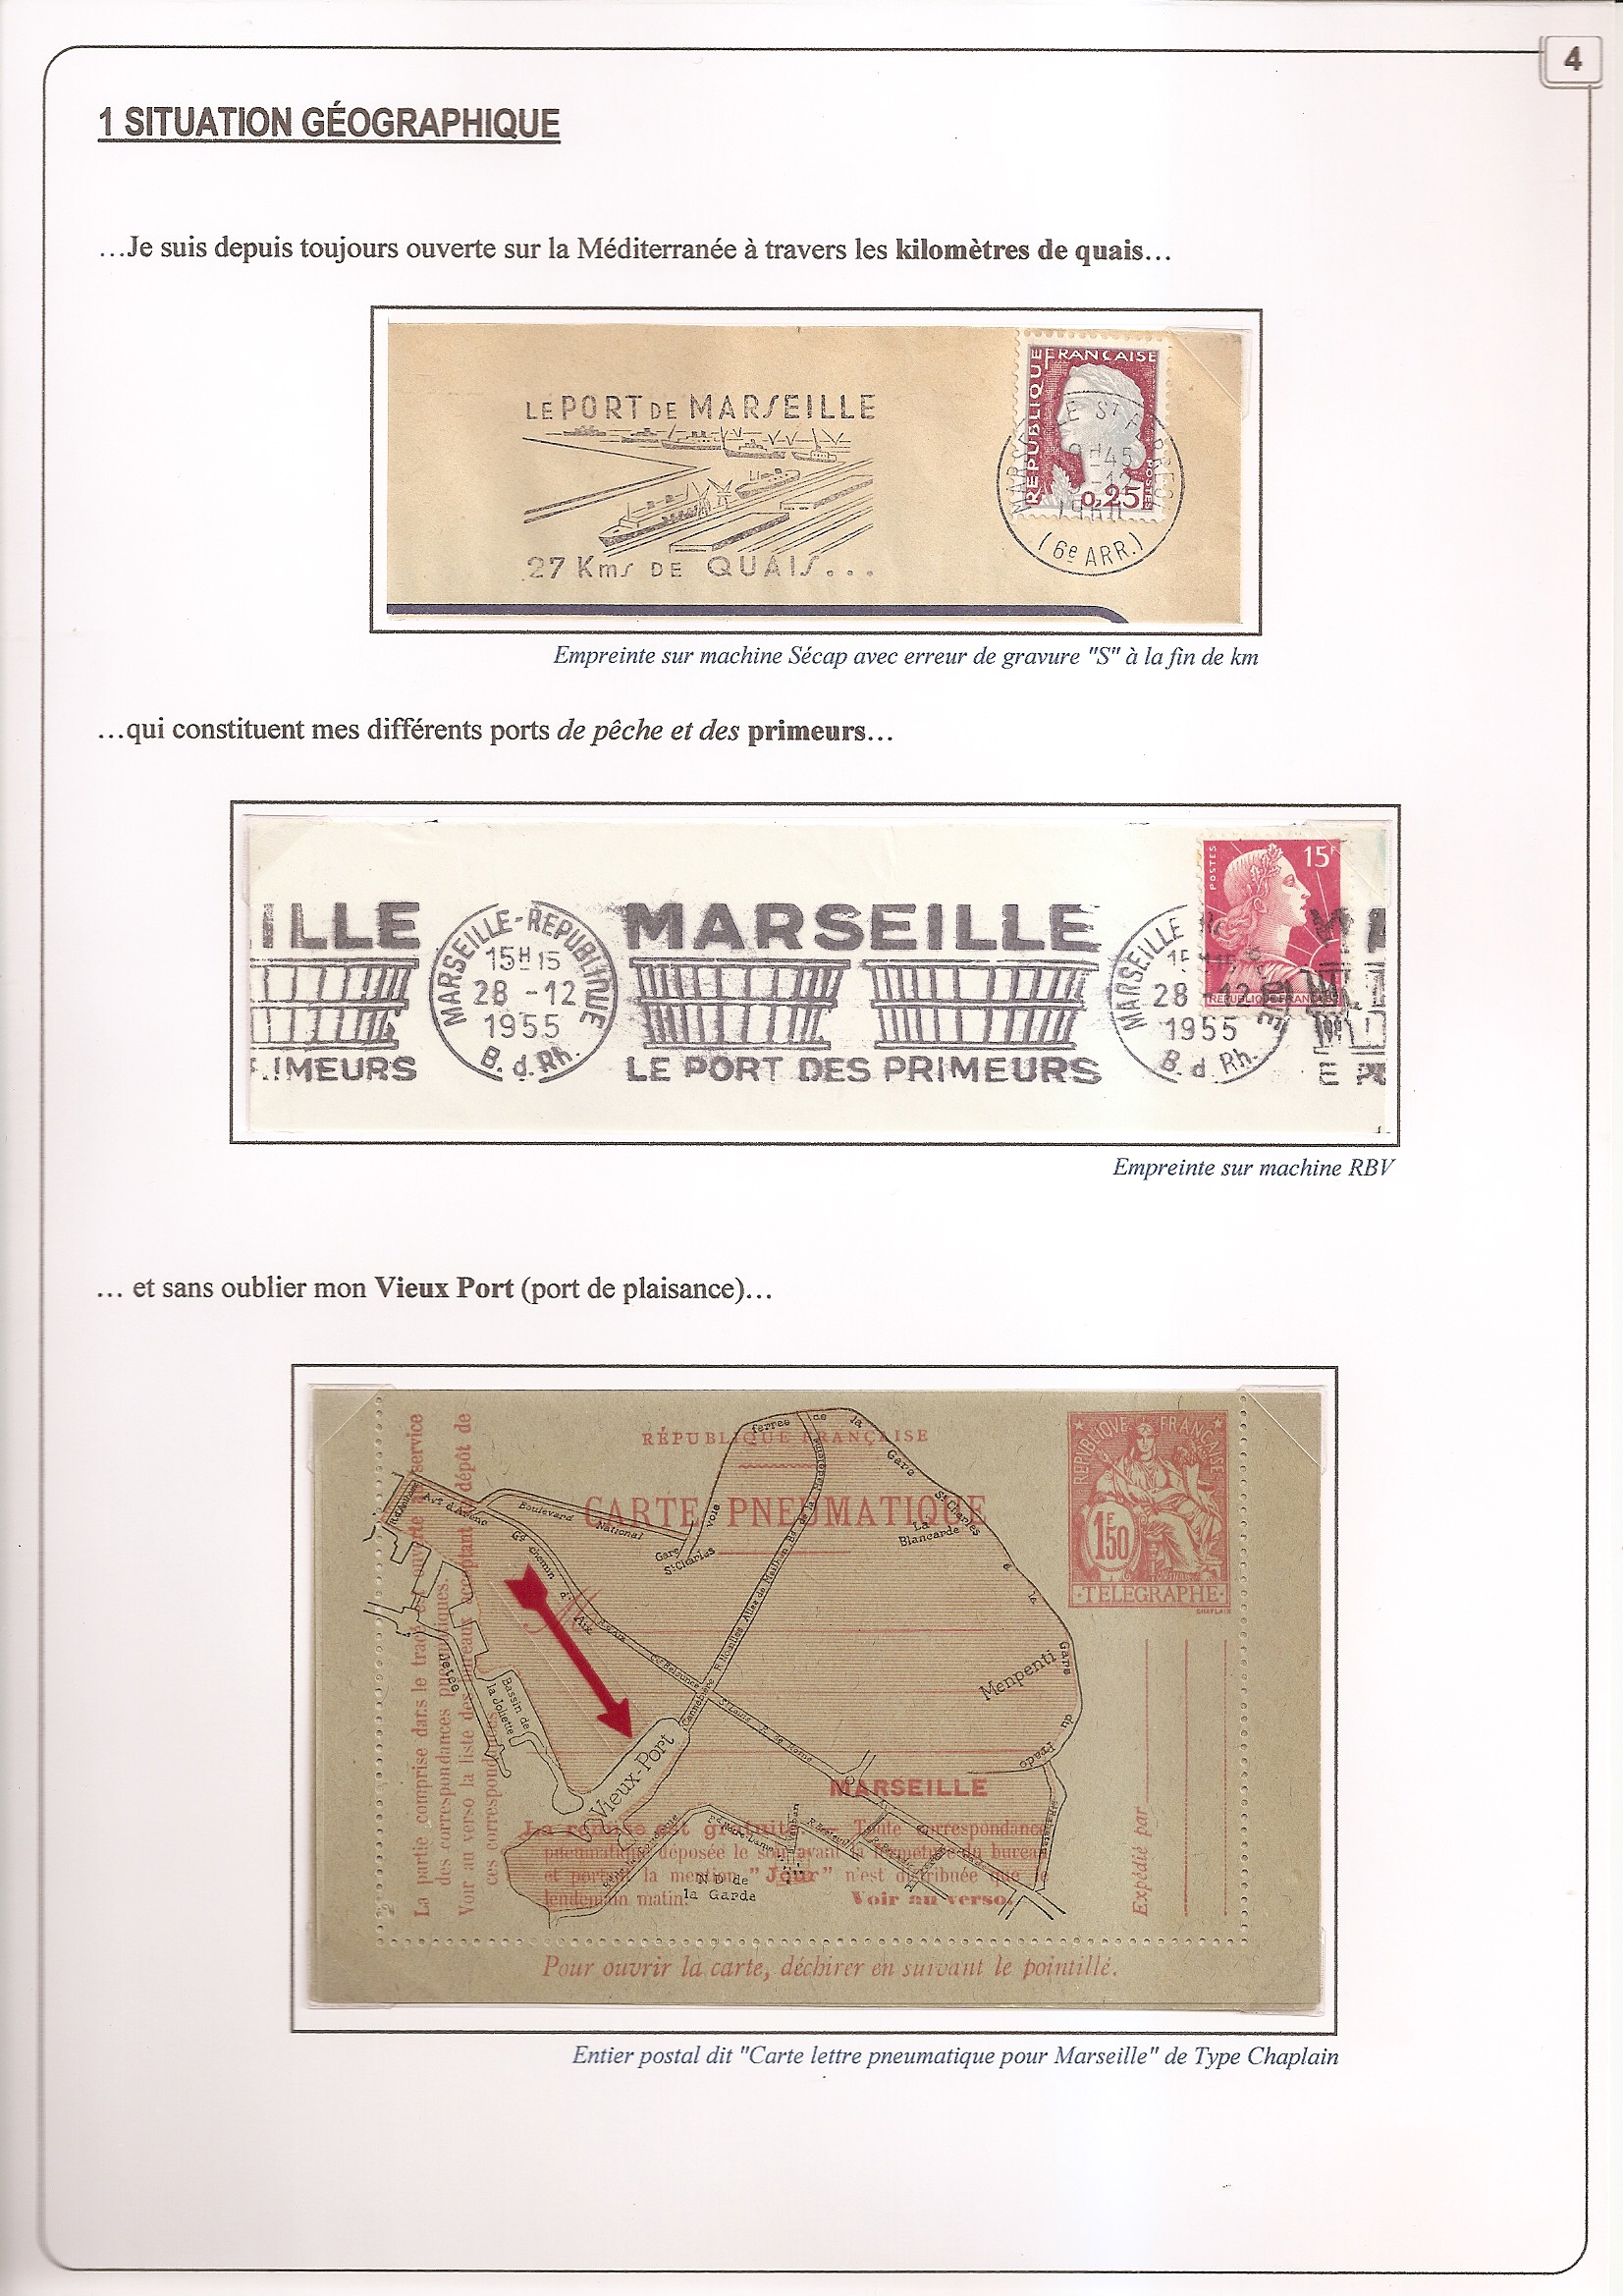 Au carrefour du monde depuis 2600 ans : Marseille p. 4